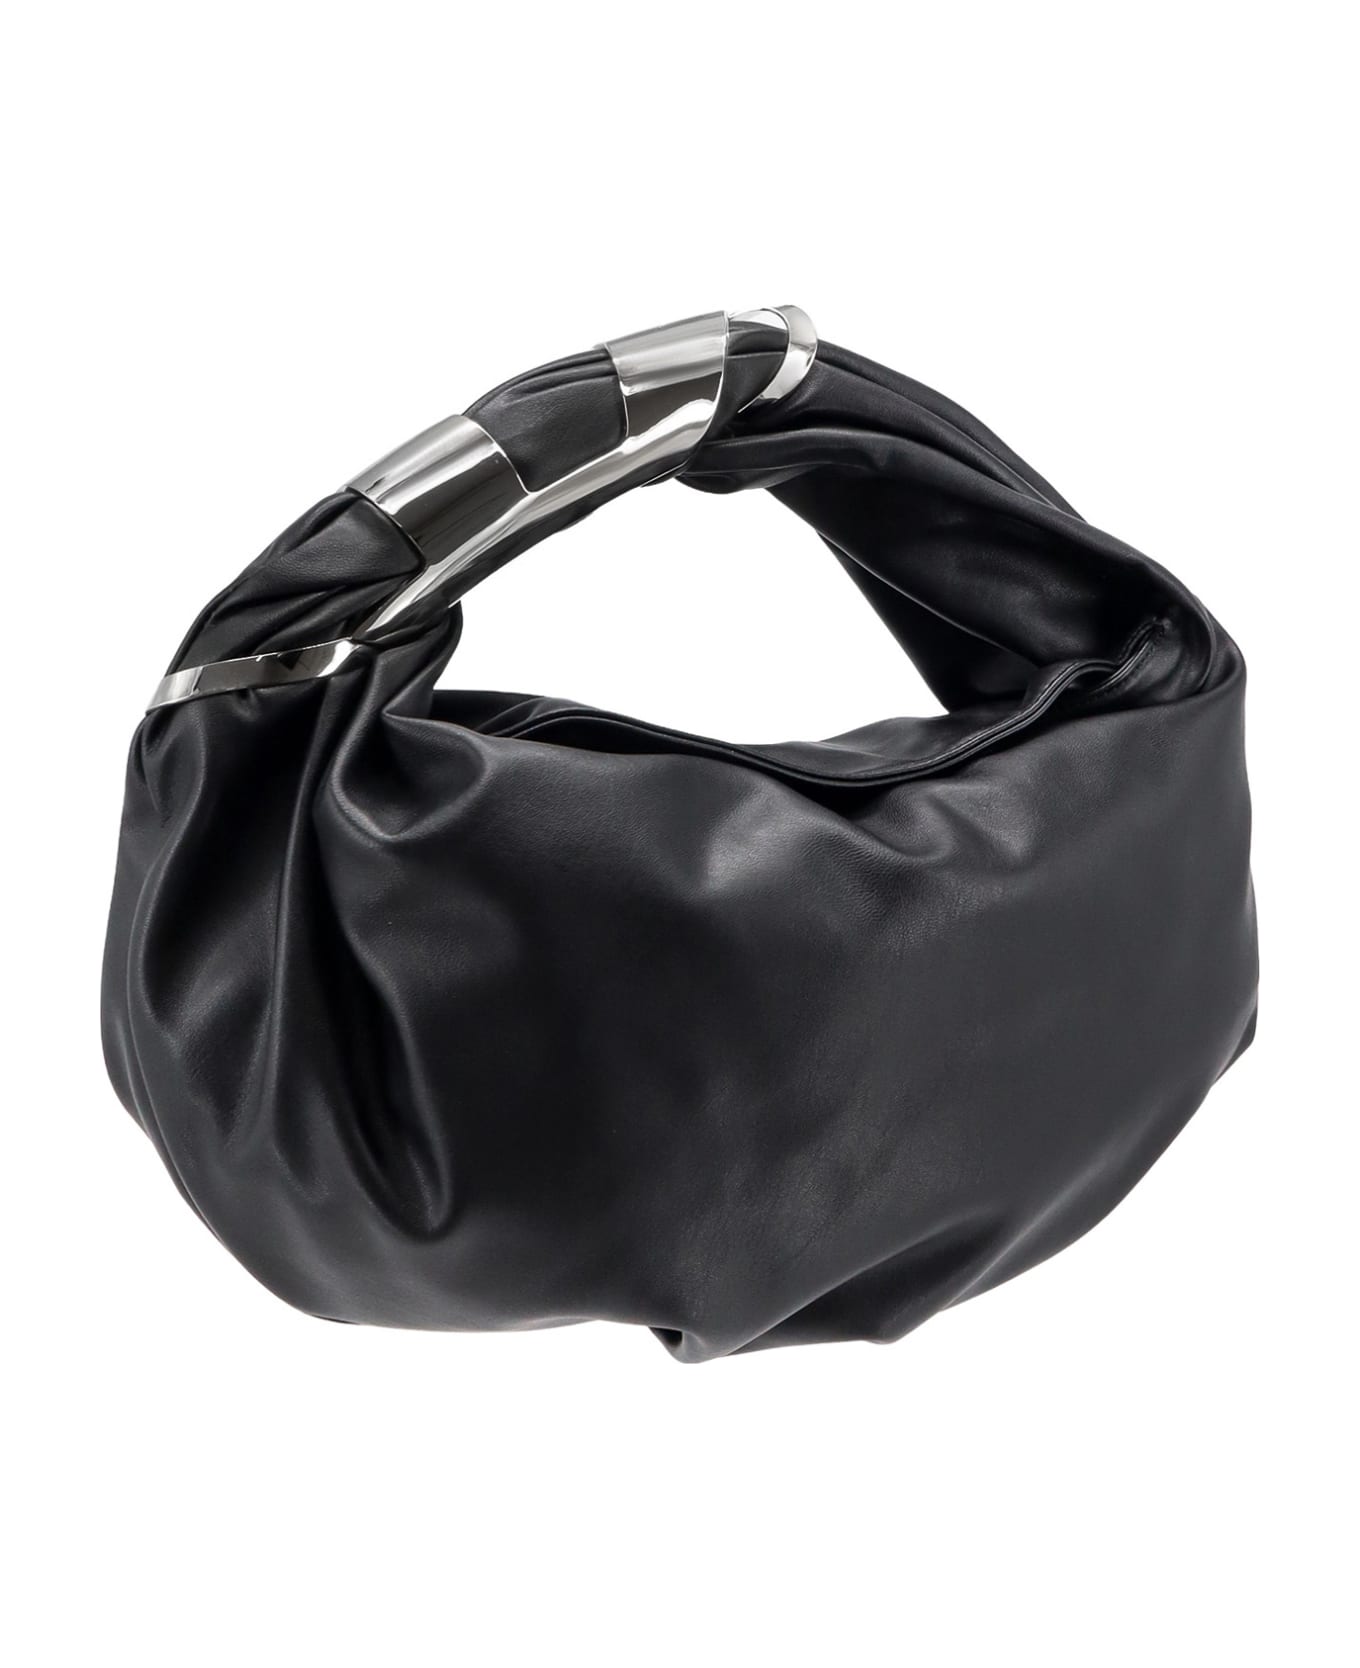 Diesel Grab-d Hobo S Handbag - Black